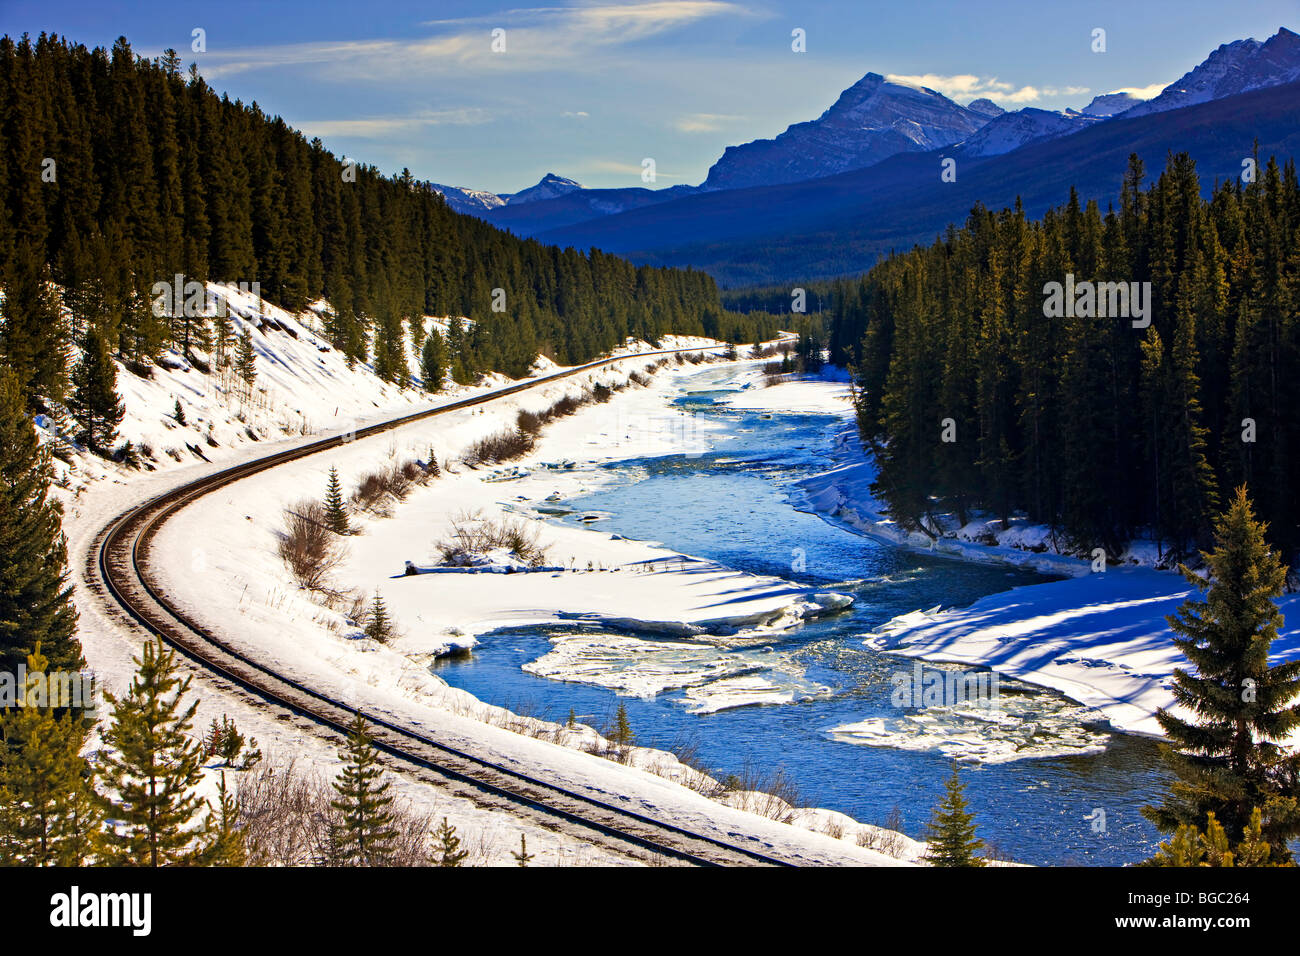 Bobinado de vías de ferrocarril, junto a la nieve y el hielo con flecos Bow River durante el invierno, el Parque Nacional Banff, montañas rocosas canadienses, un Foto de stock